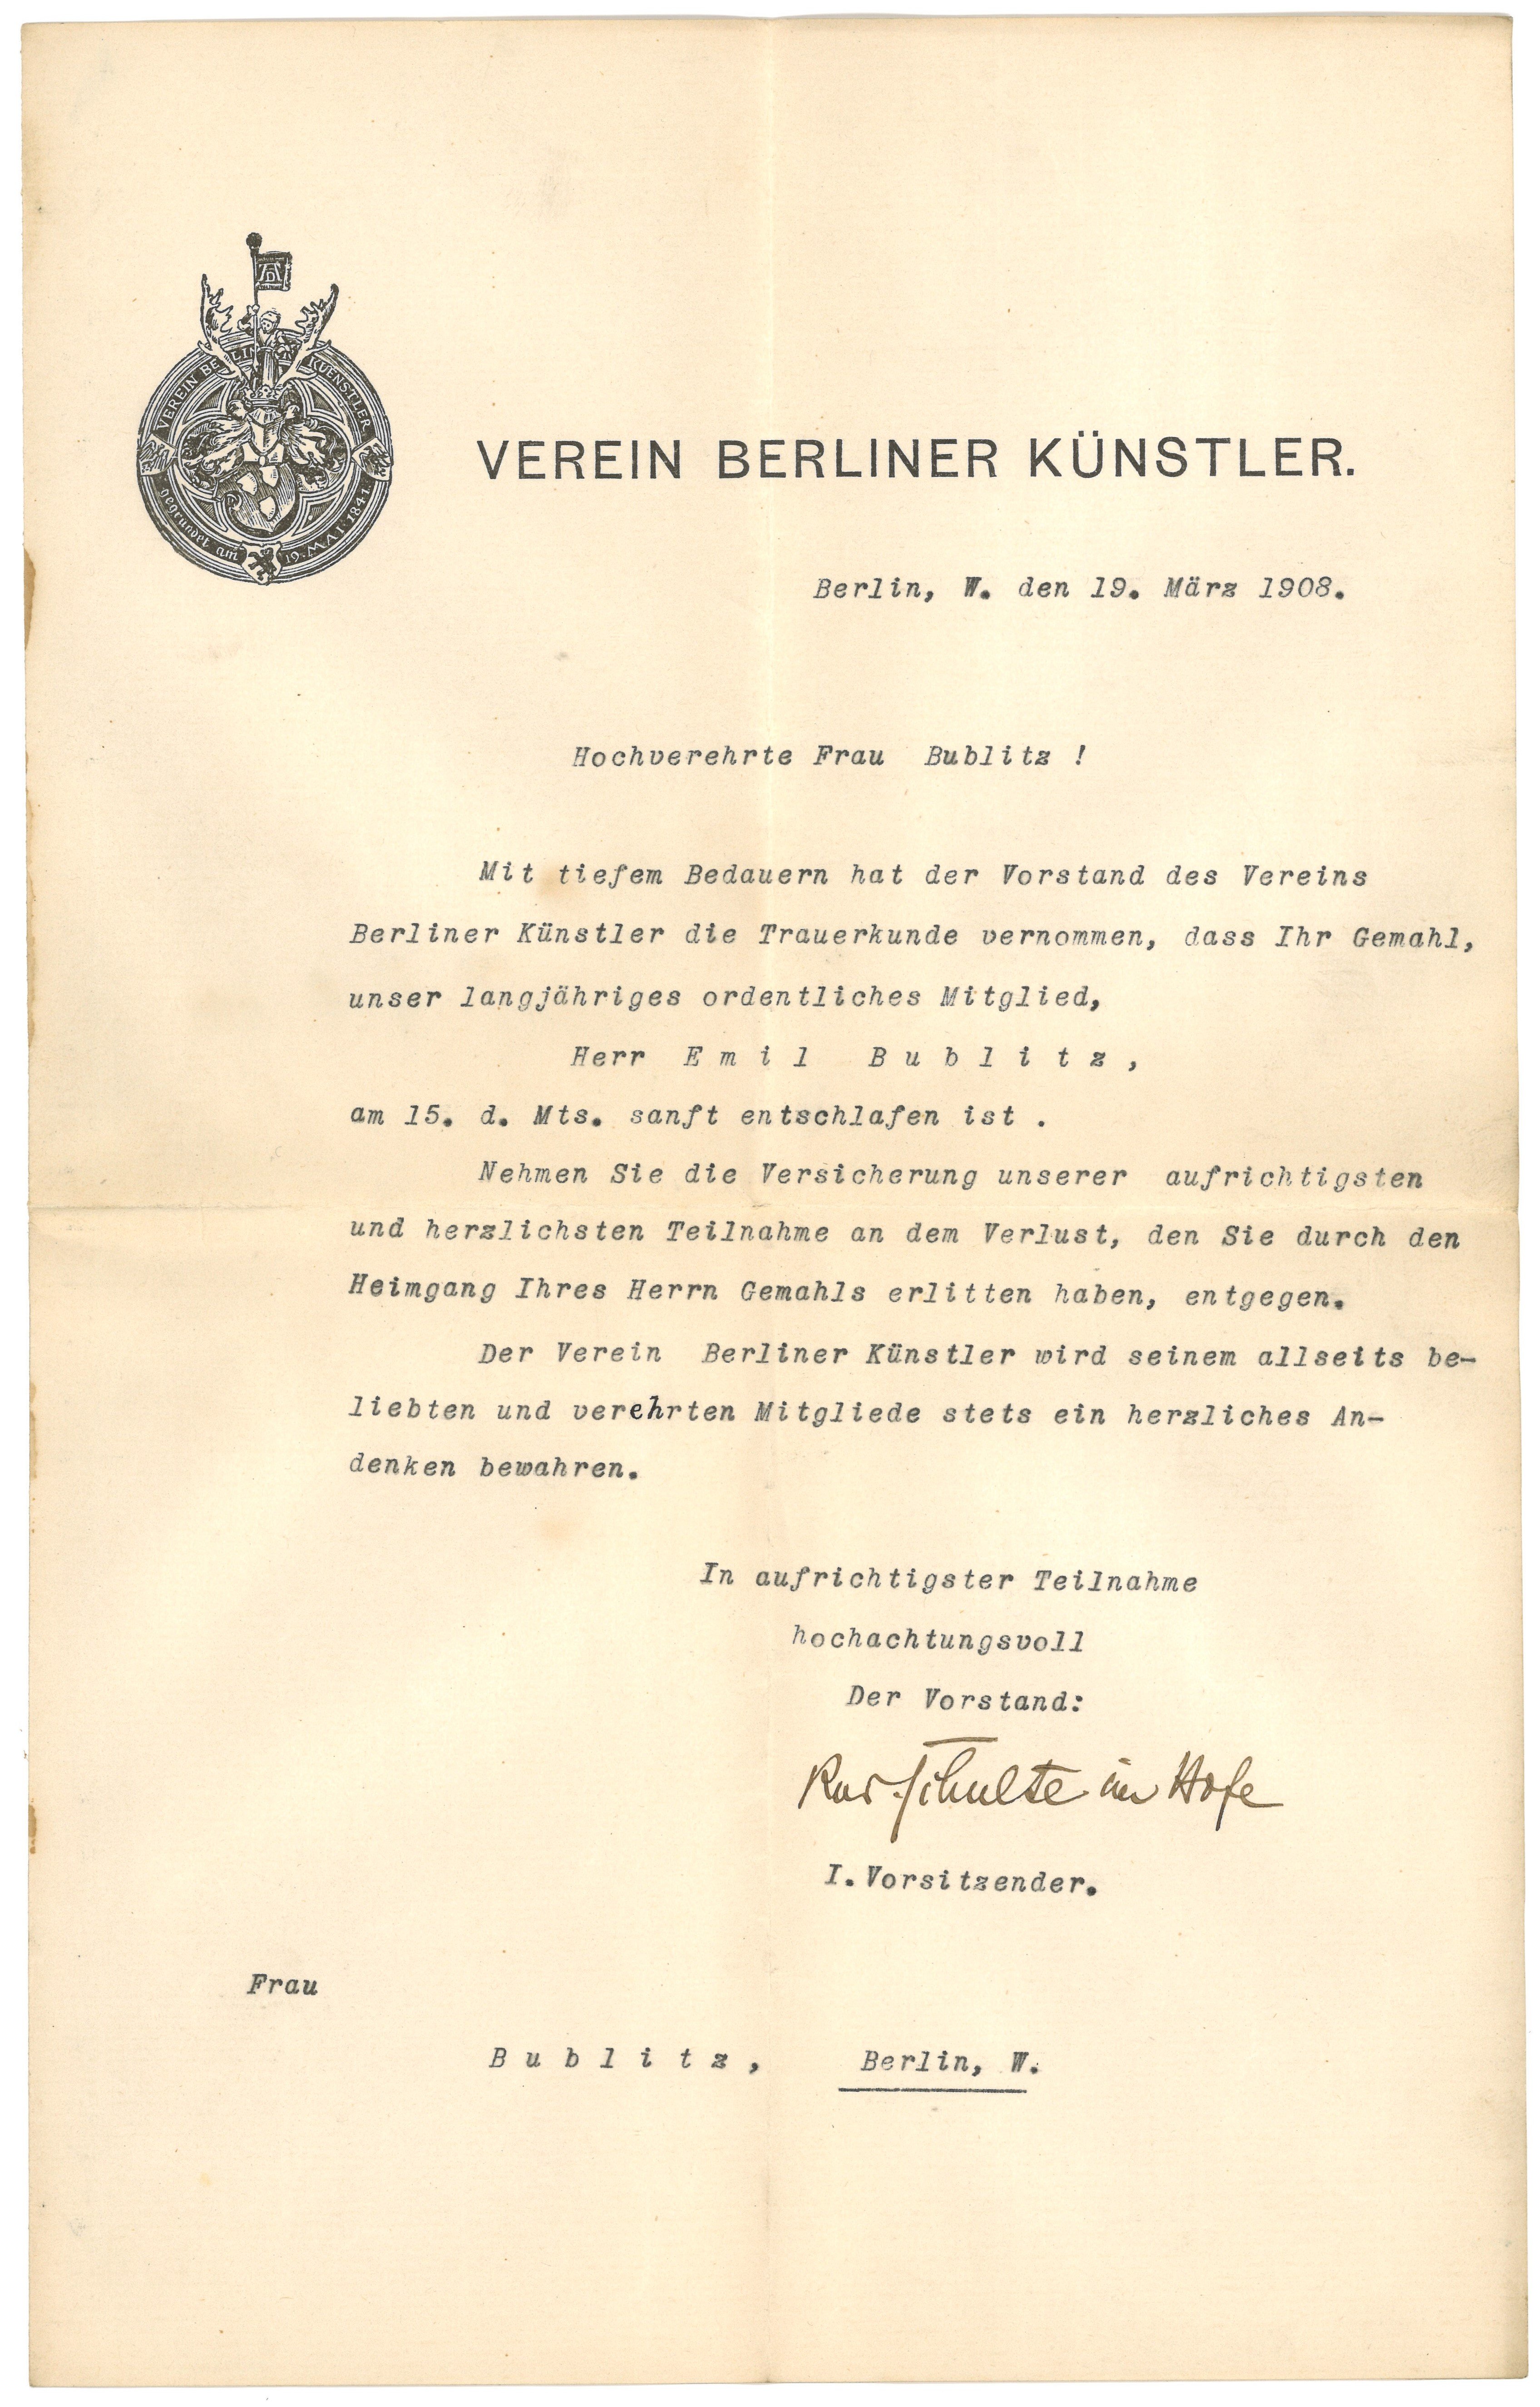 Kondolenzschreiben des Vereins Berliner Künstler an die Witwe des ordentlichen Mitglieds Karl Bublitz 1908 (Landesgeschichtliche Vereinigung für die Mark Brandenburg e.V., Archiv CC BY)